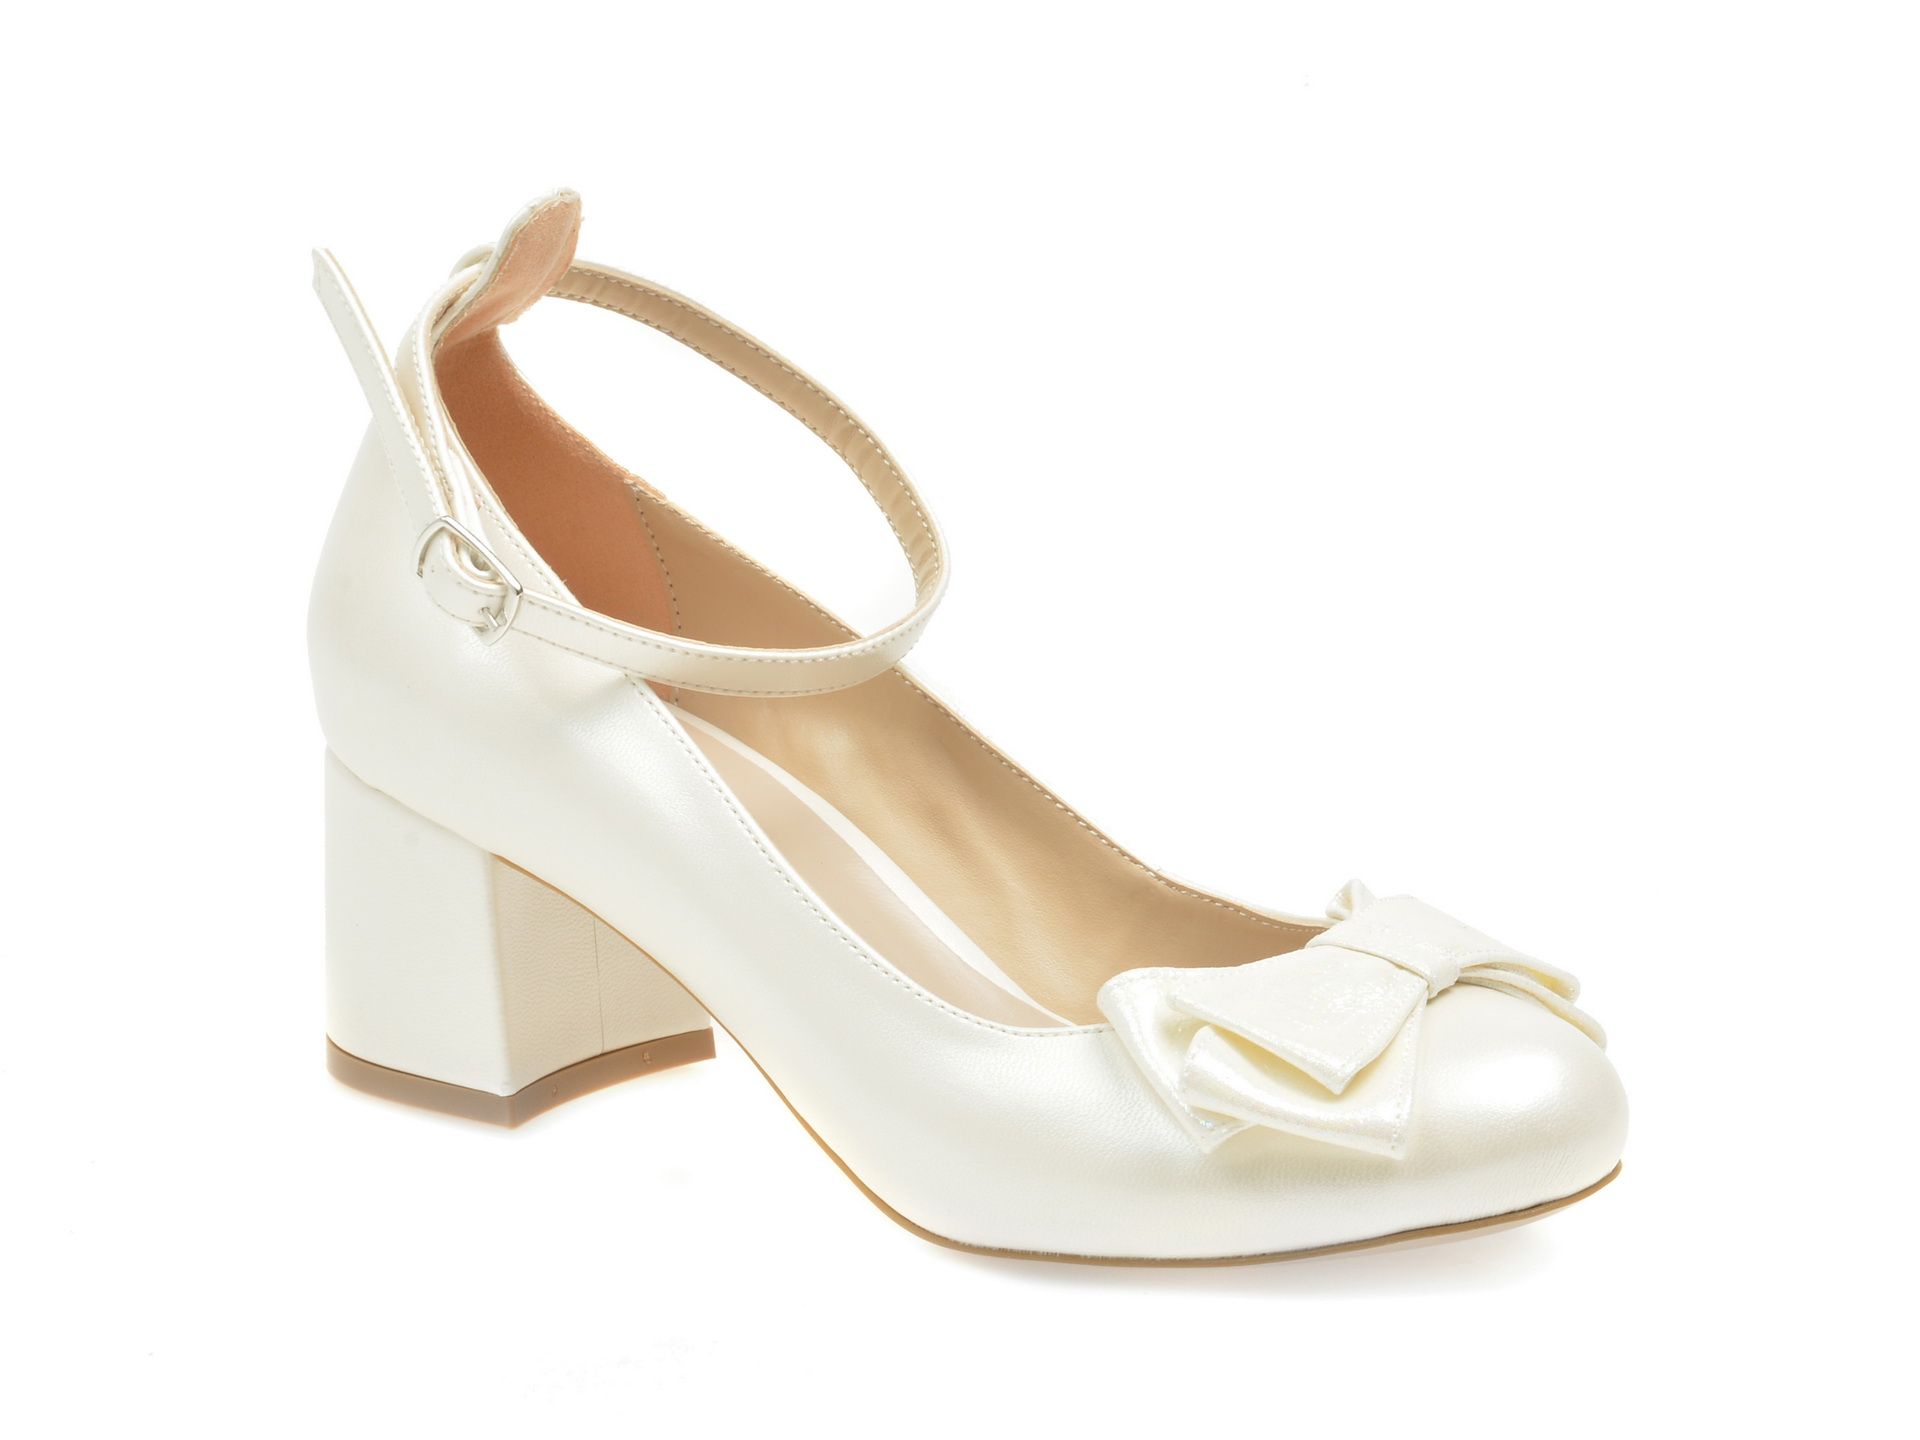 Pantofi EPICA albi pentru mireasa, 4576013, din piele ecologica